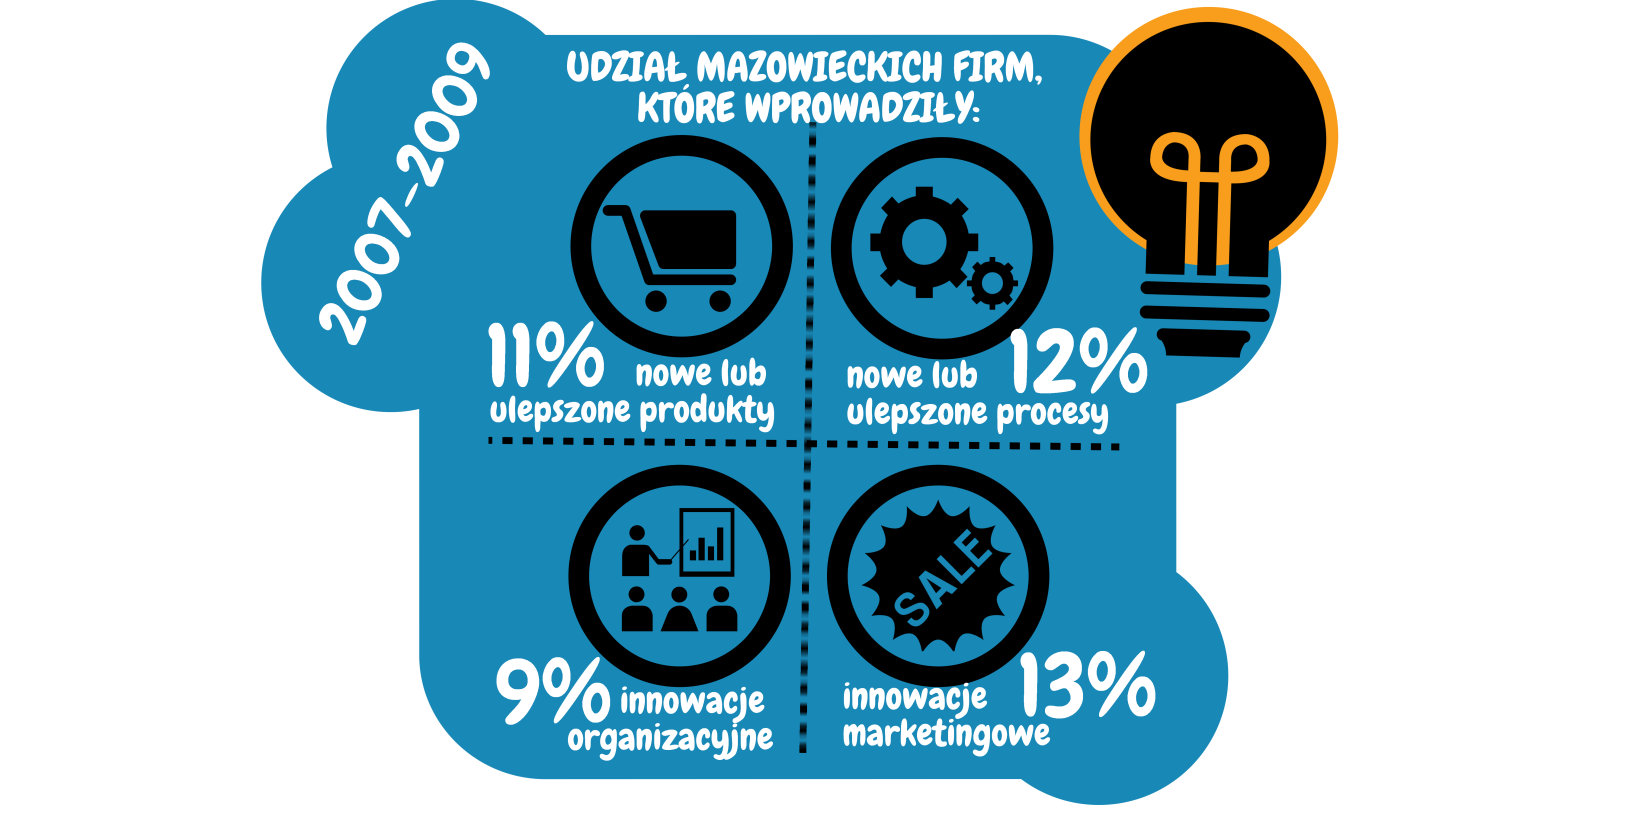 3. Innowacyjność W 2009 r. w województwie mazowieckim działało ok. 105 tysięcy przedsiębiorstw innowacyjnych, co stanowiło 16,2% ogółu przedsiębiorstw regionu.